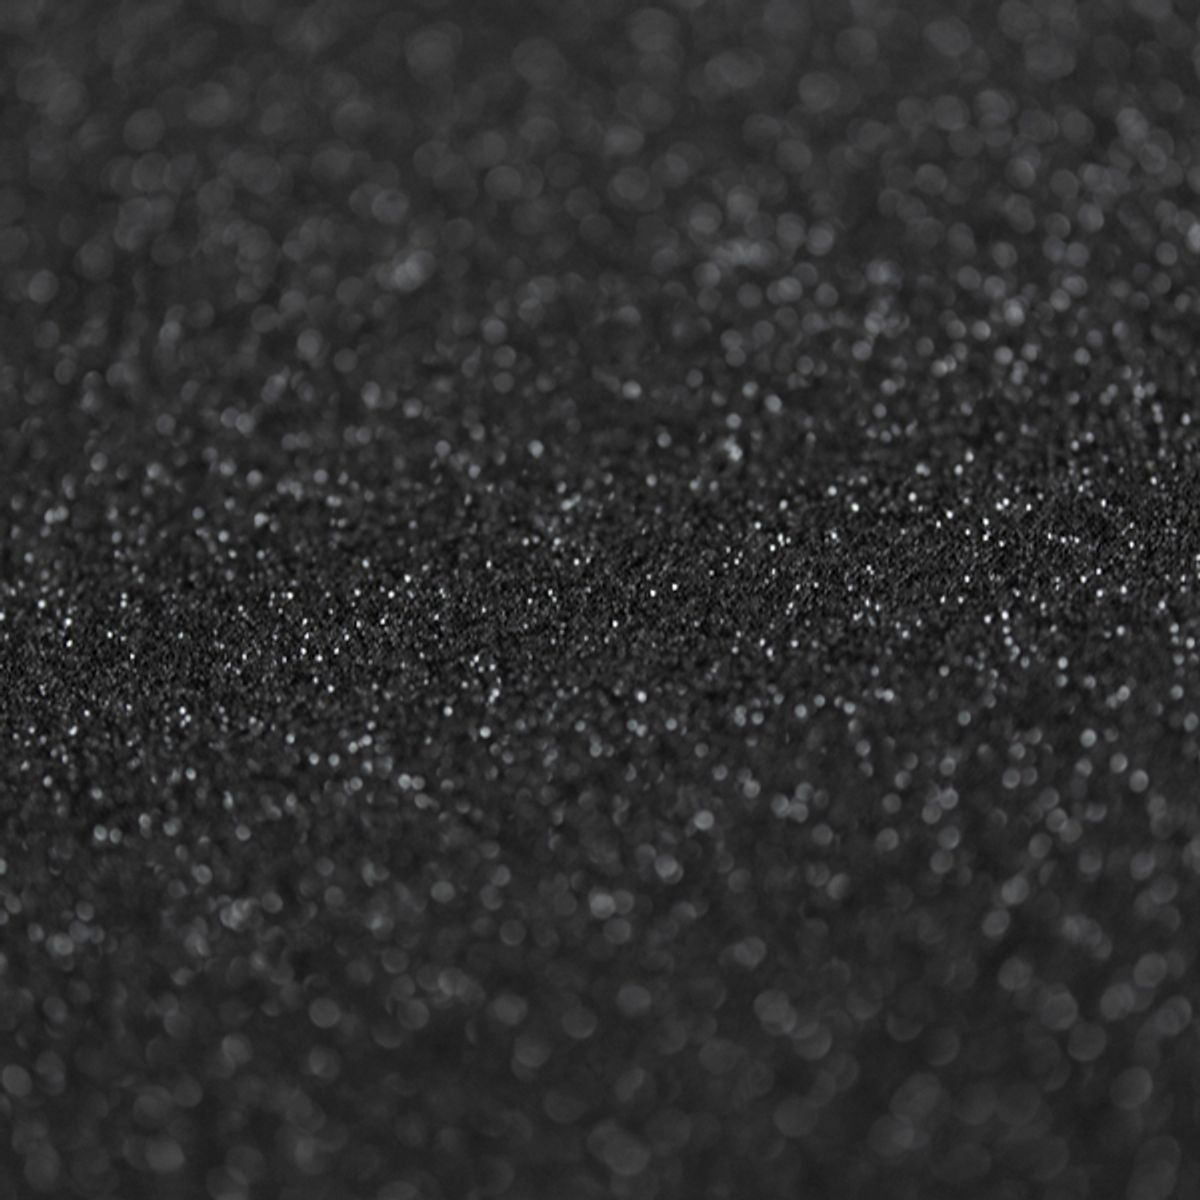 Vareprøve: Glitter sort kontaktplast